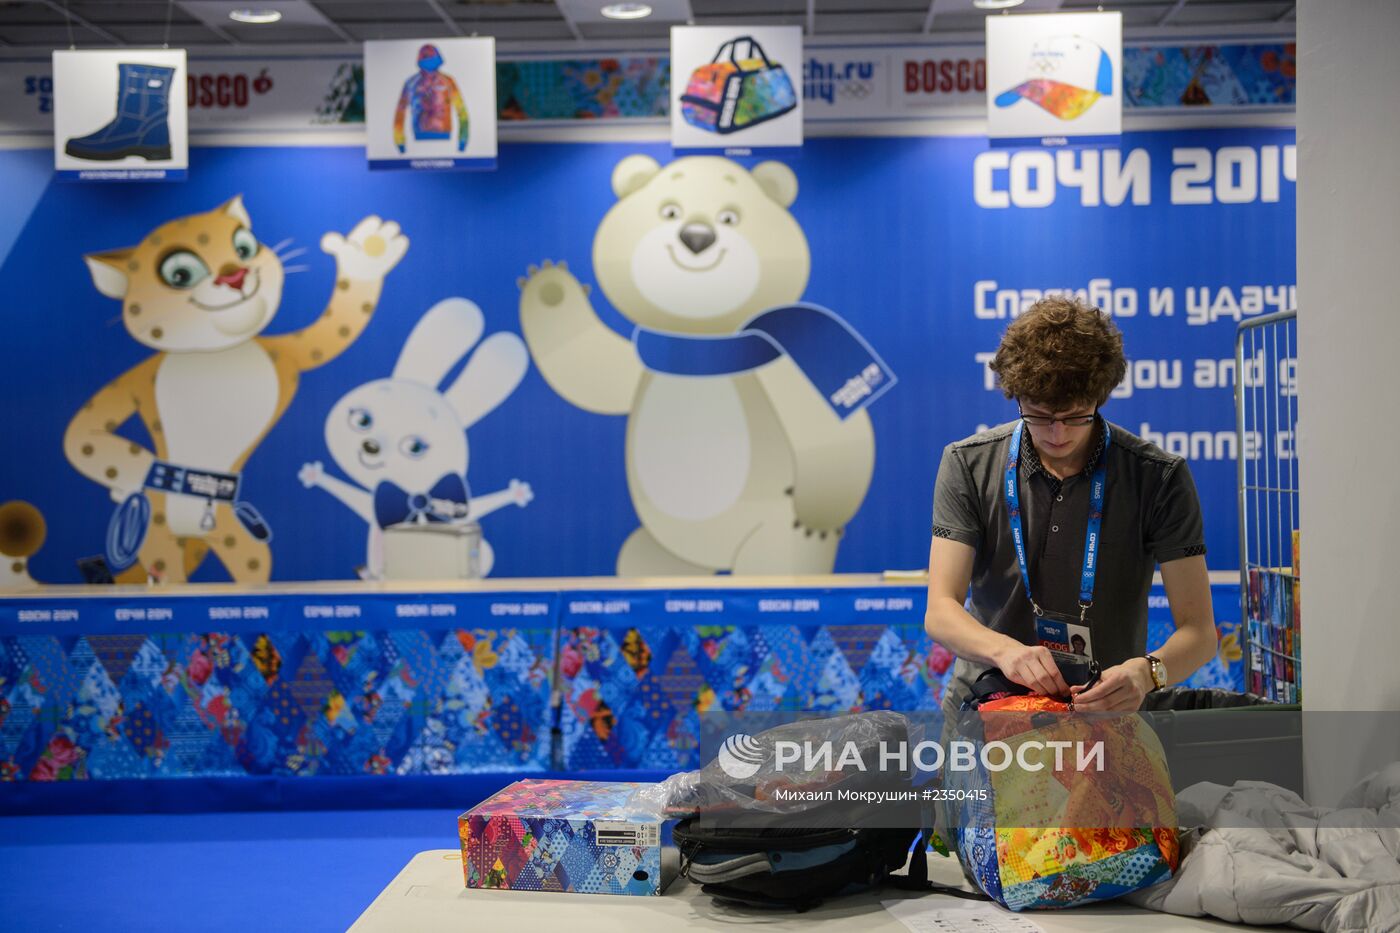 Экипировка волонтеров Олимпийских игр 2014 года в Сочи